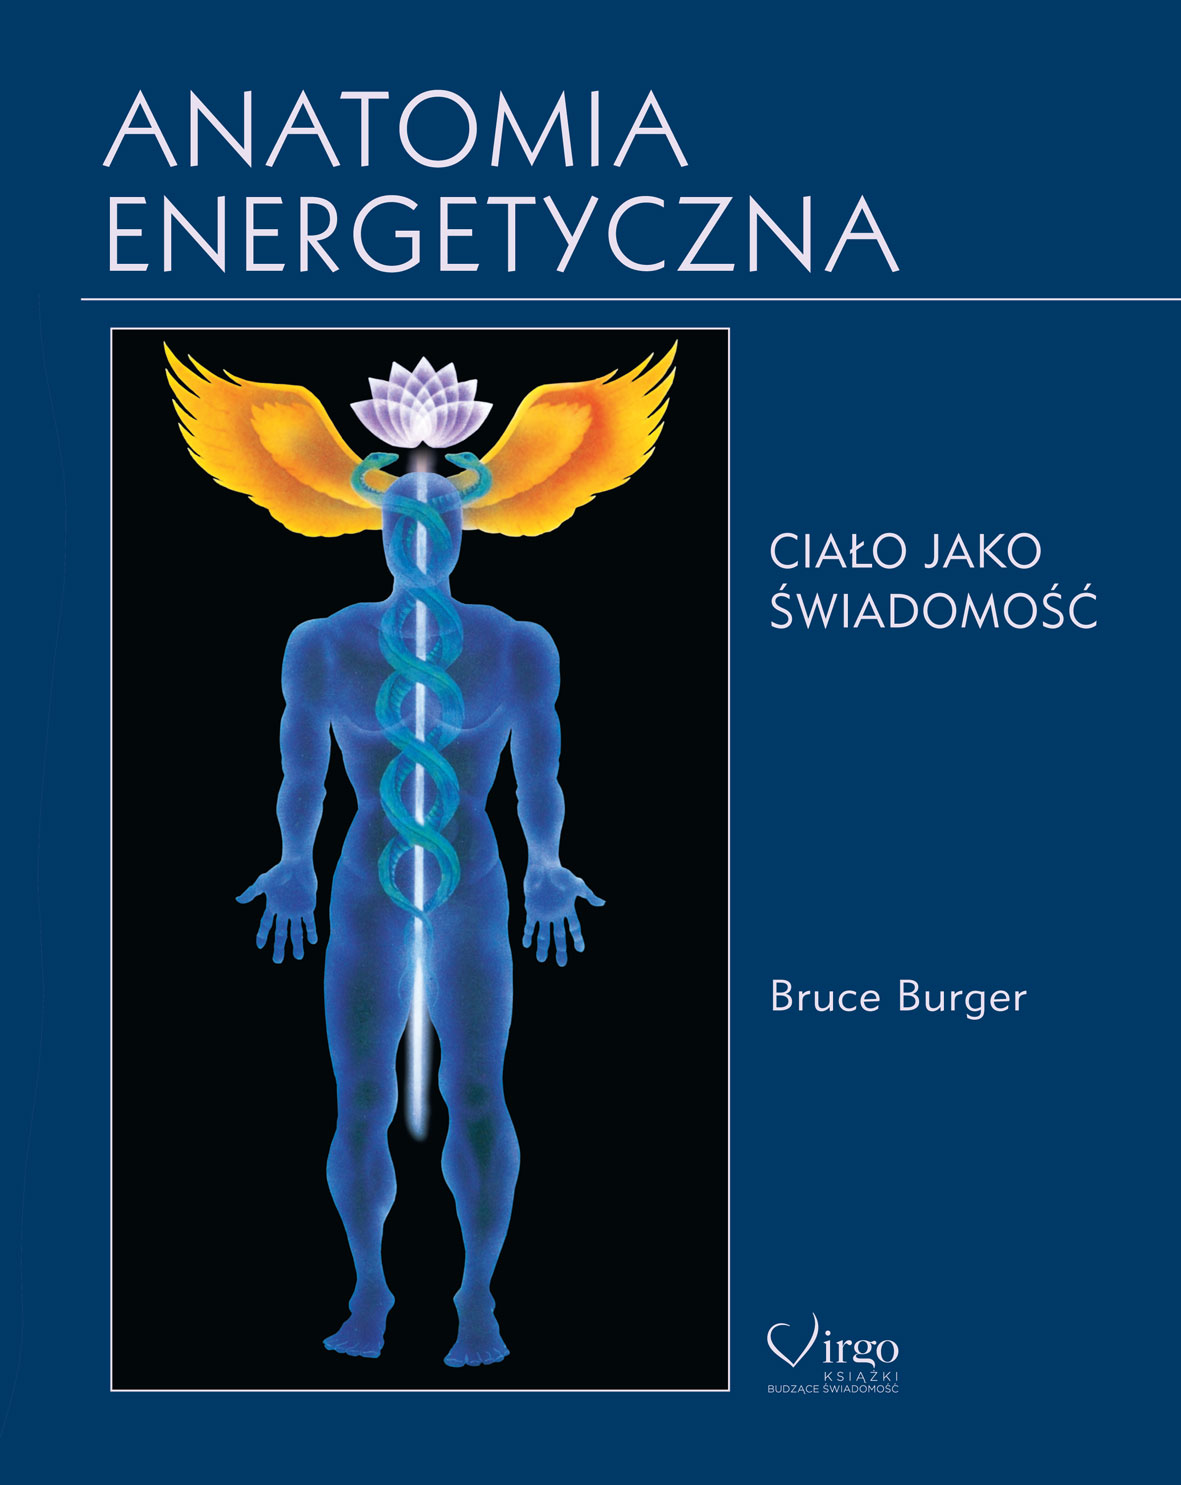 Anatomia energetyczna Virgo